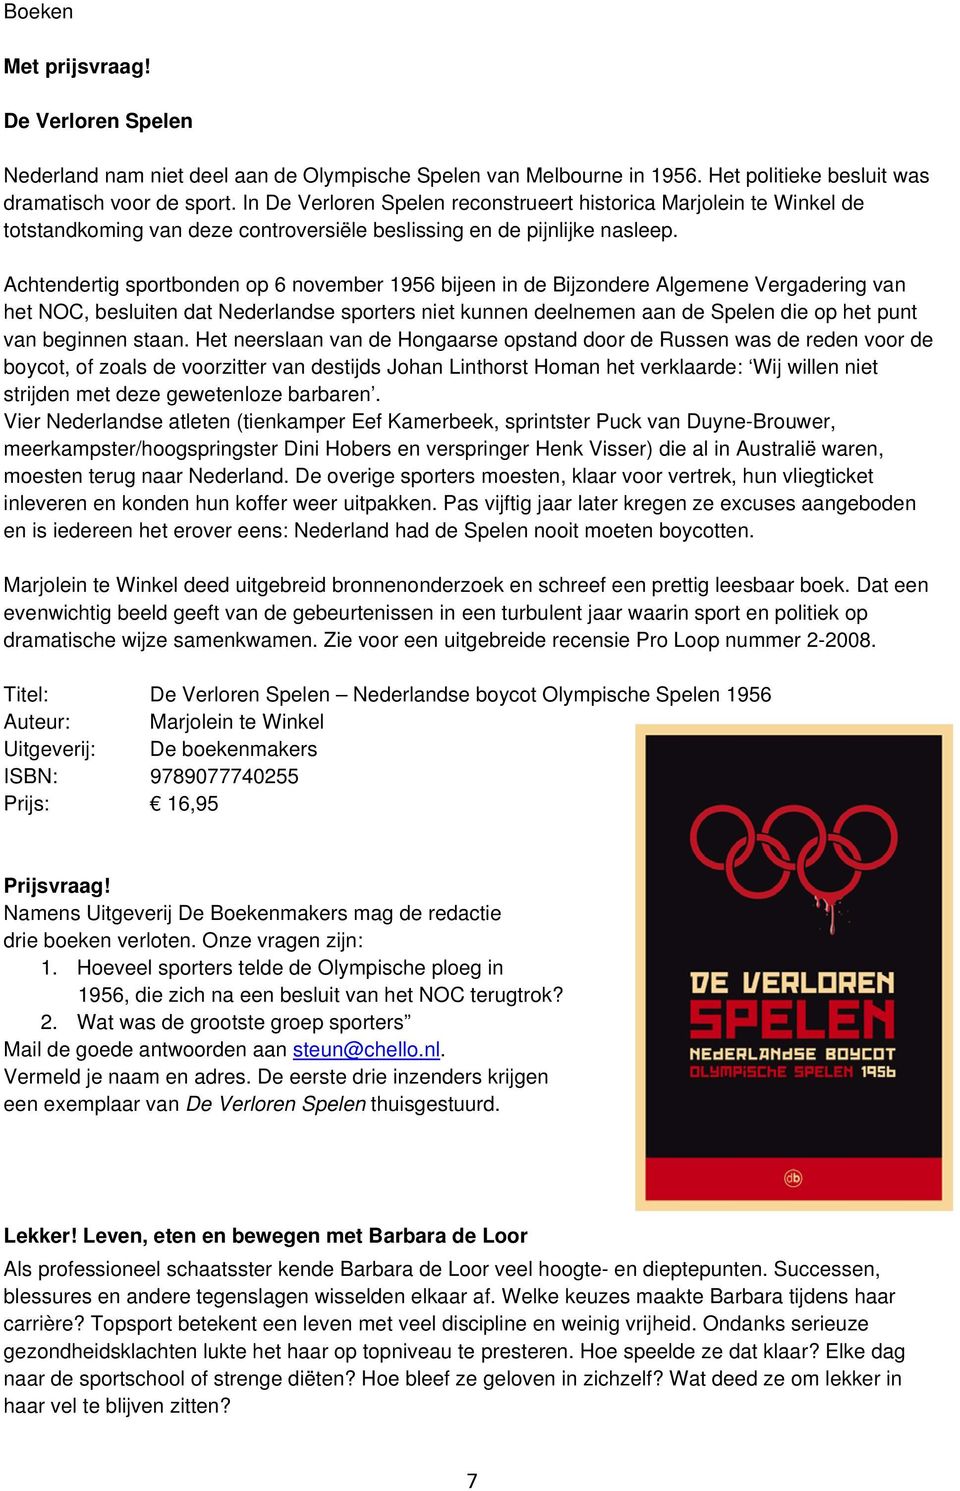 Achtendertig sportbonden op 6 november 1956 bijeen in de Bijzondere Algemene Vergadering van het NOC, besluiten dat Nederlandse sporters niet kunnen deelnemen aan de Spelen die op het punt van